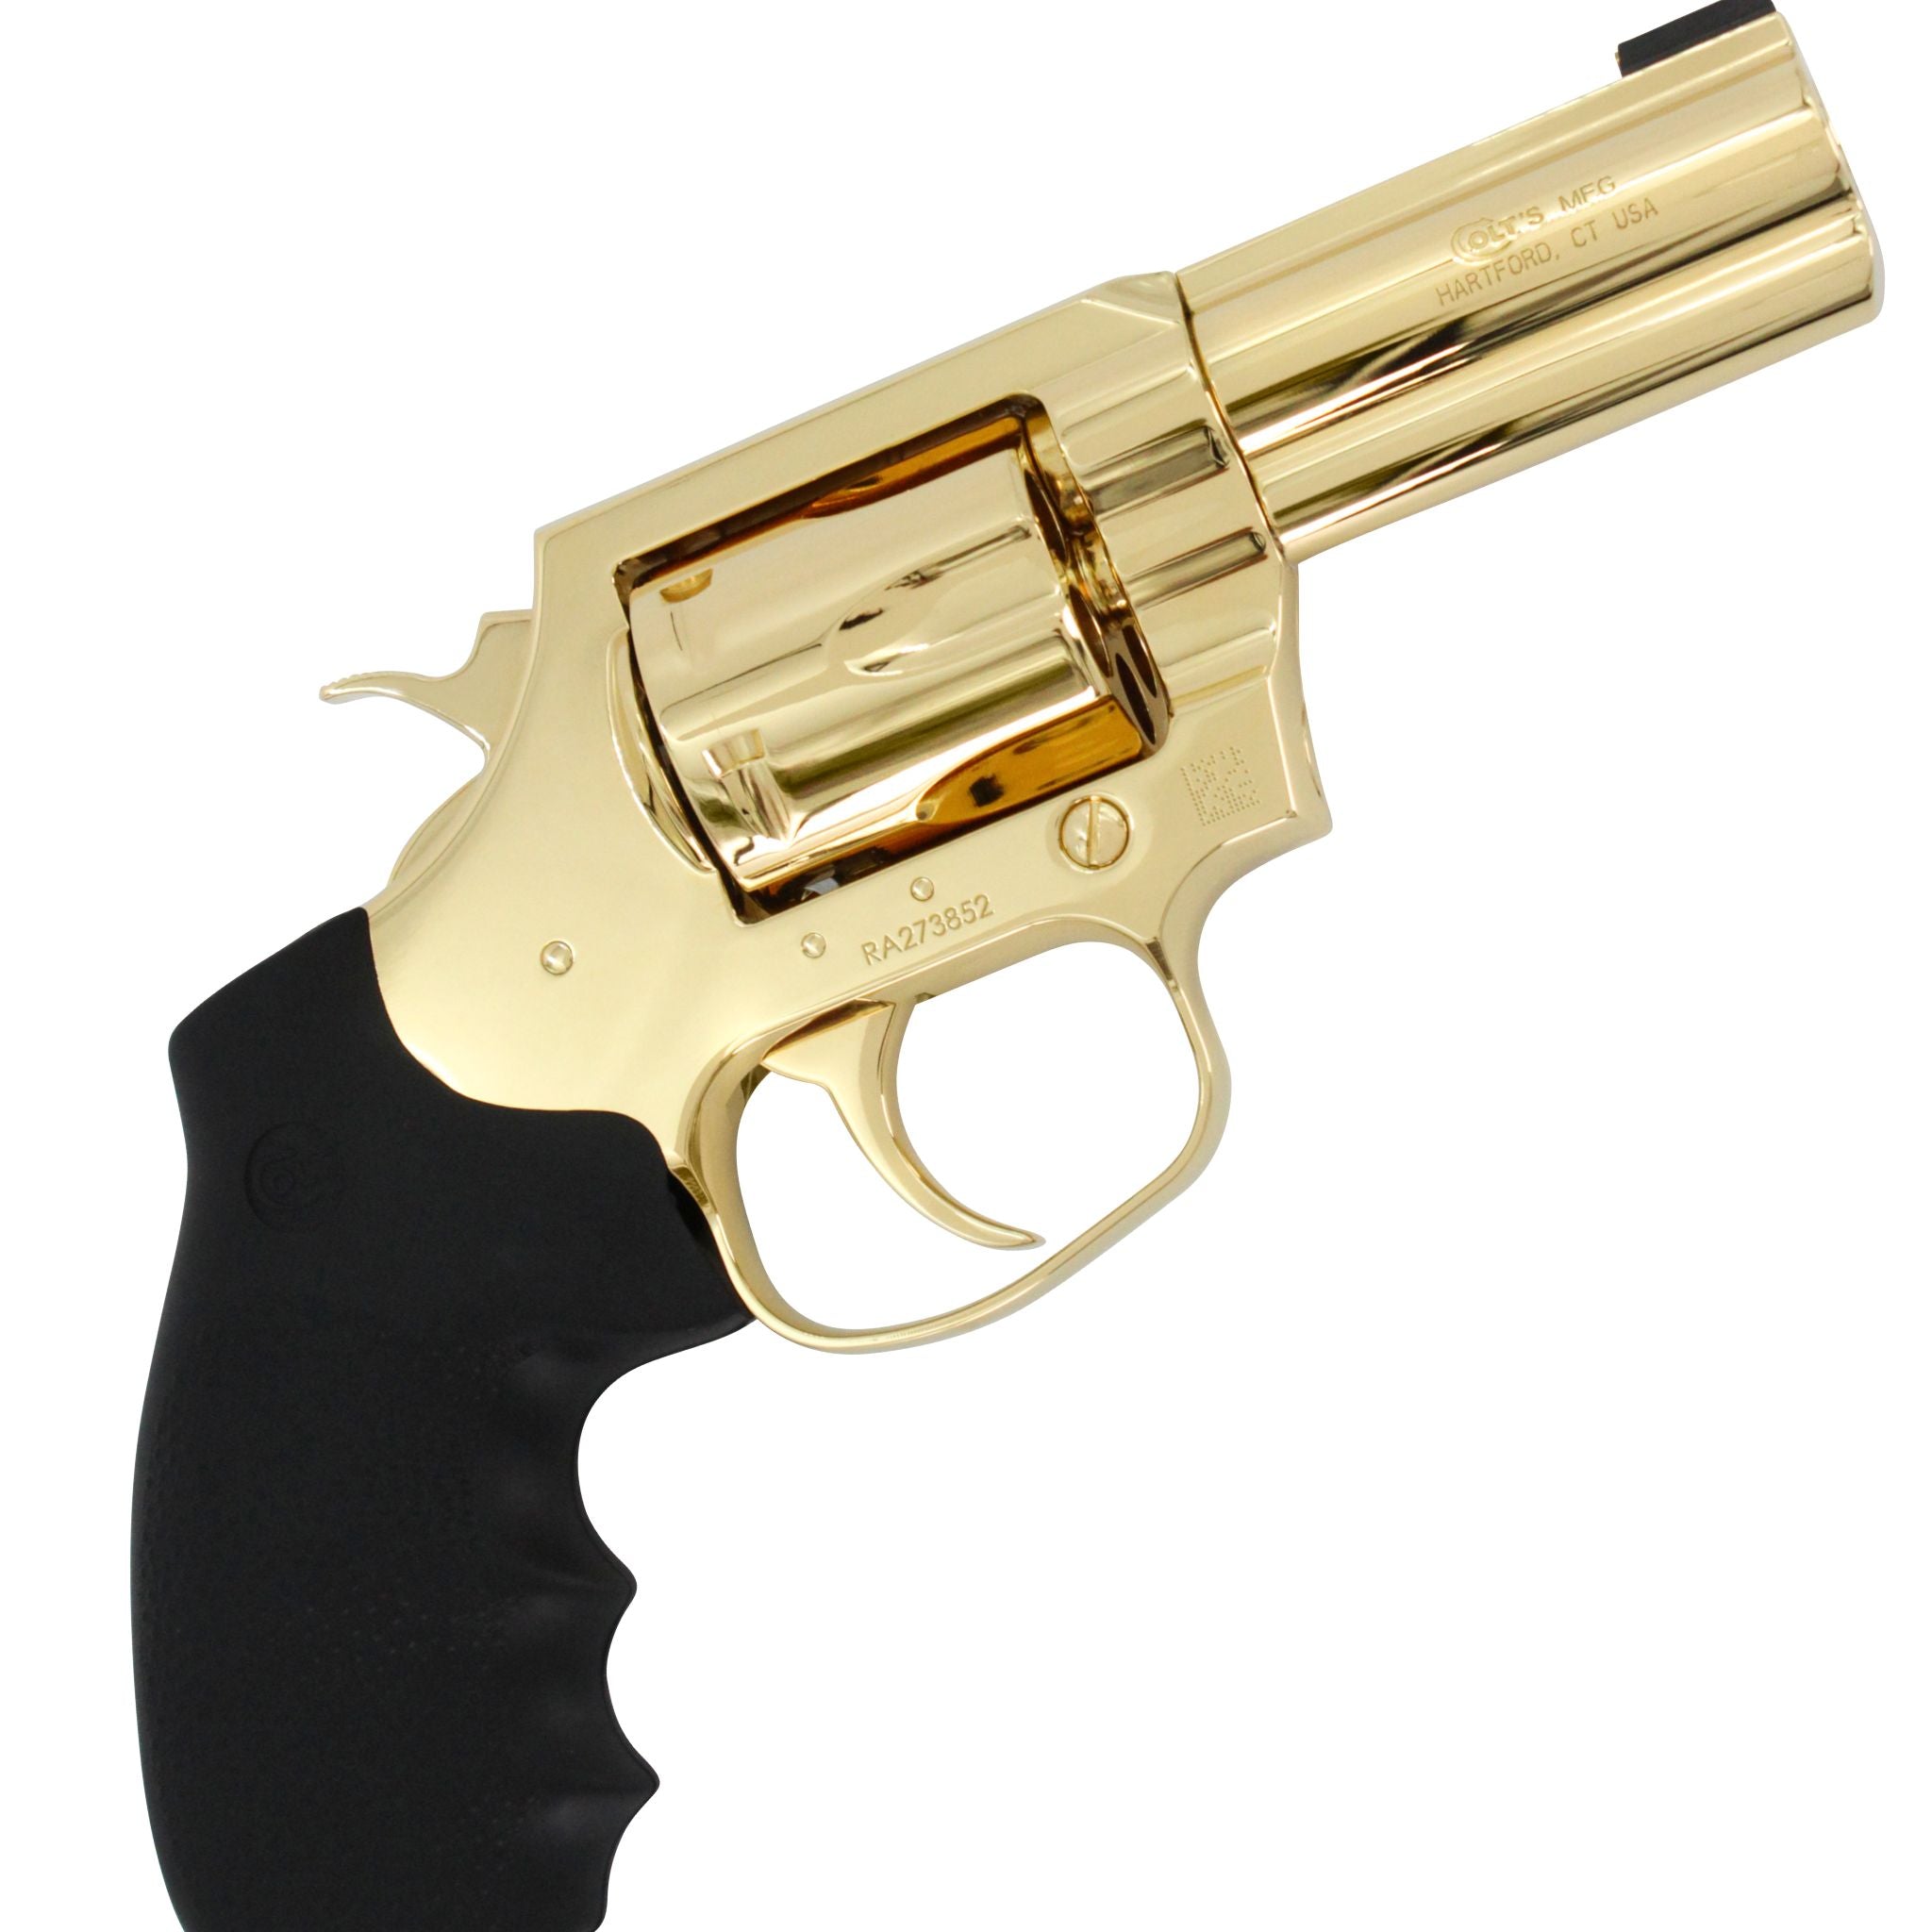 Colt King Cobra, 3", 357 Magnum, 24 karat Gold Plated, SKU: 4905672999014, Gold Gun, gold firearm